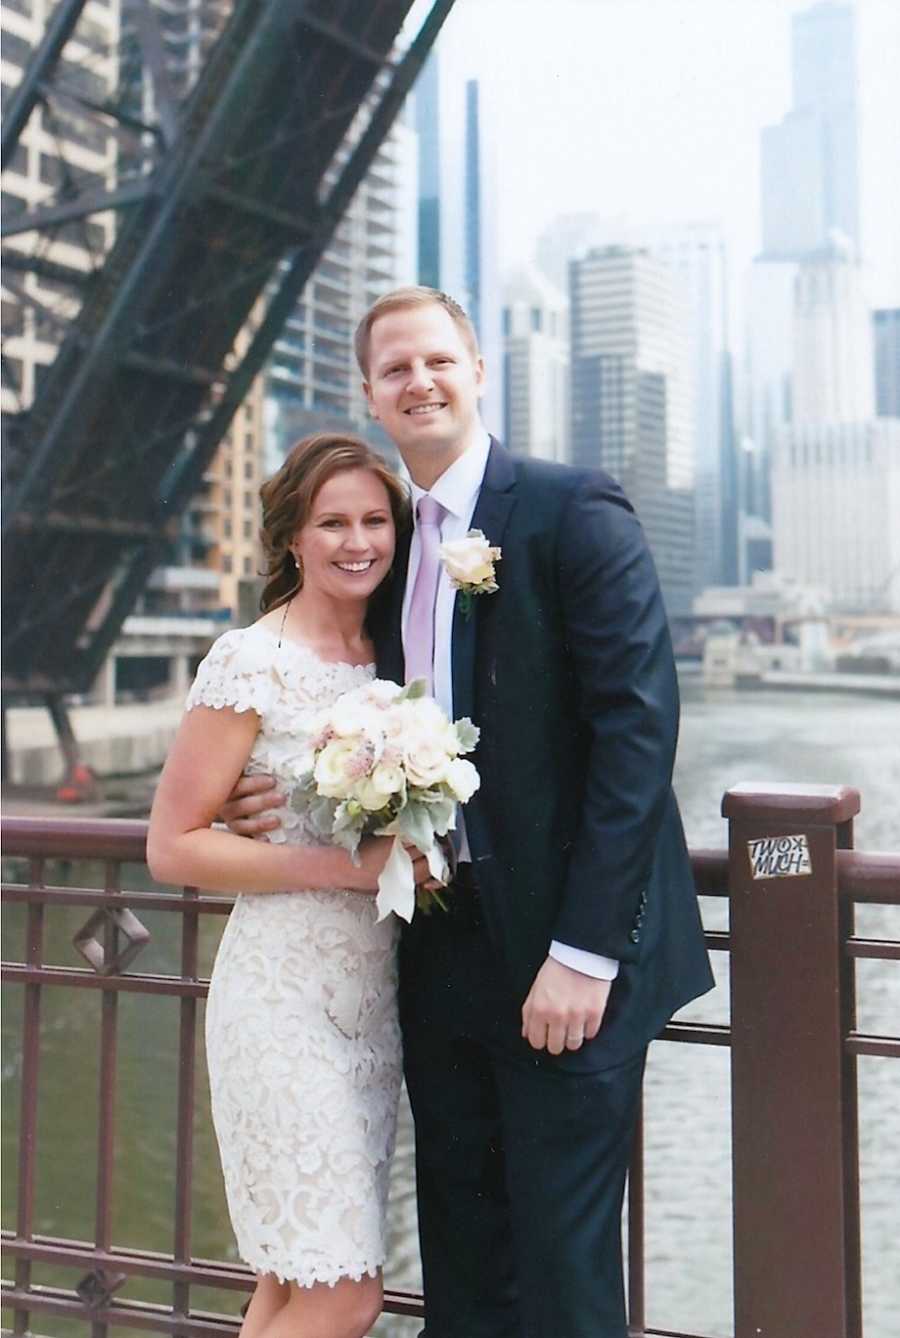 Husband and wife wedding photo